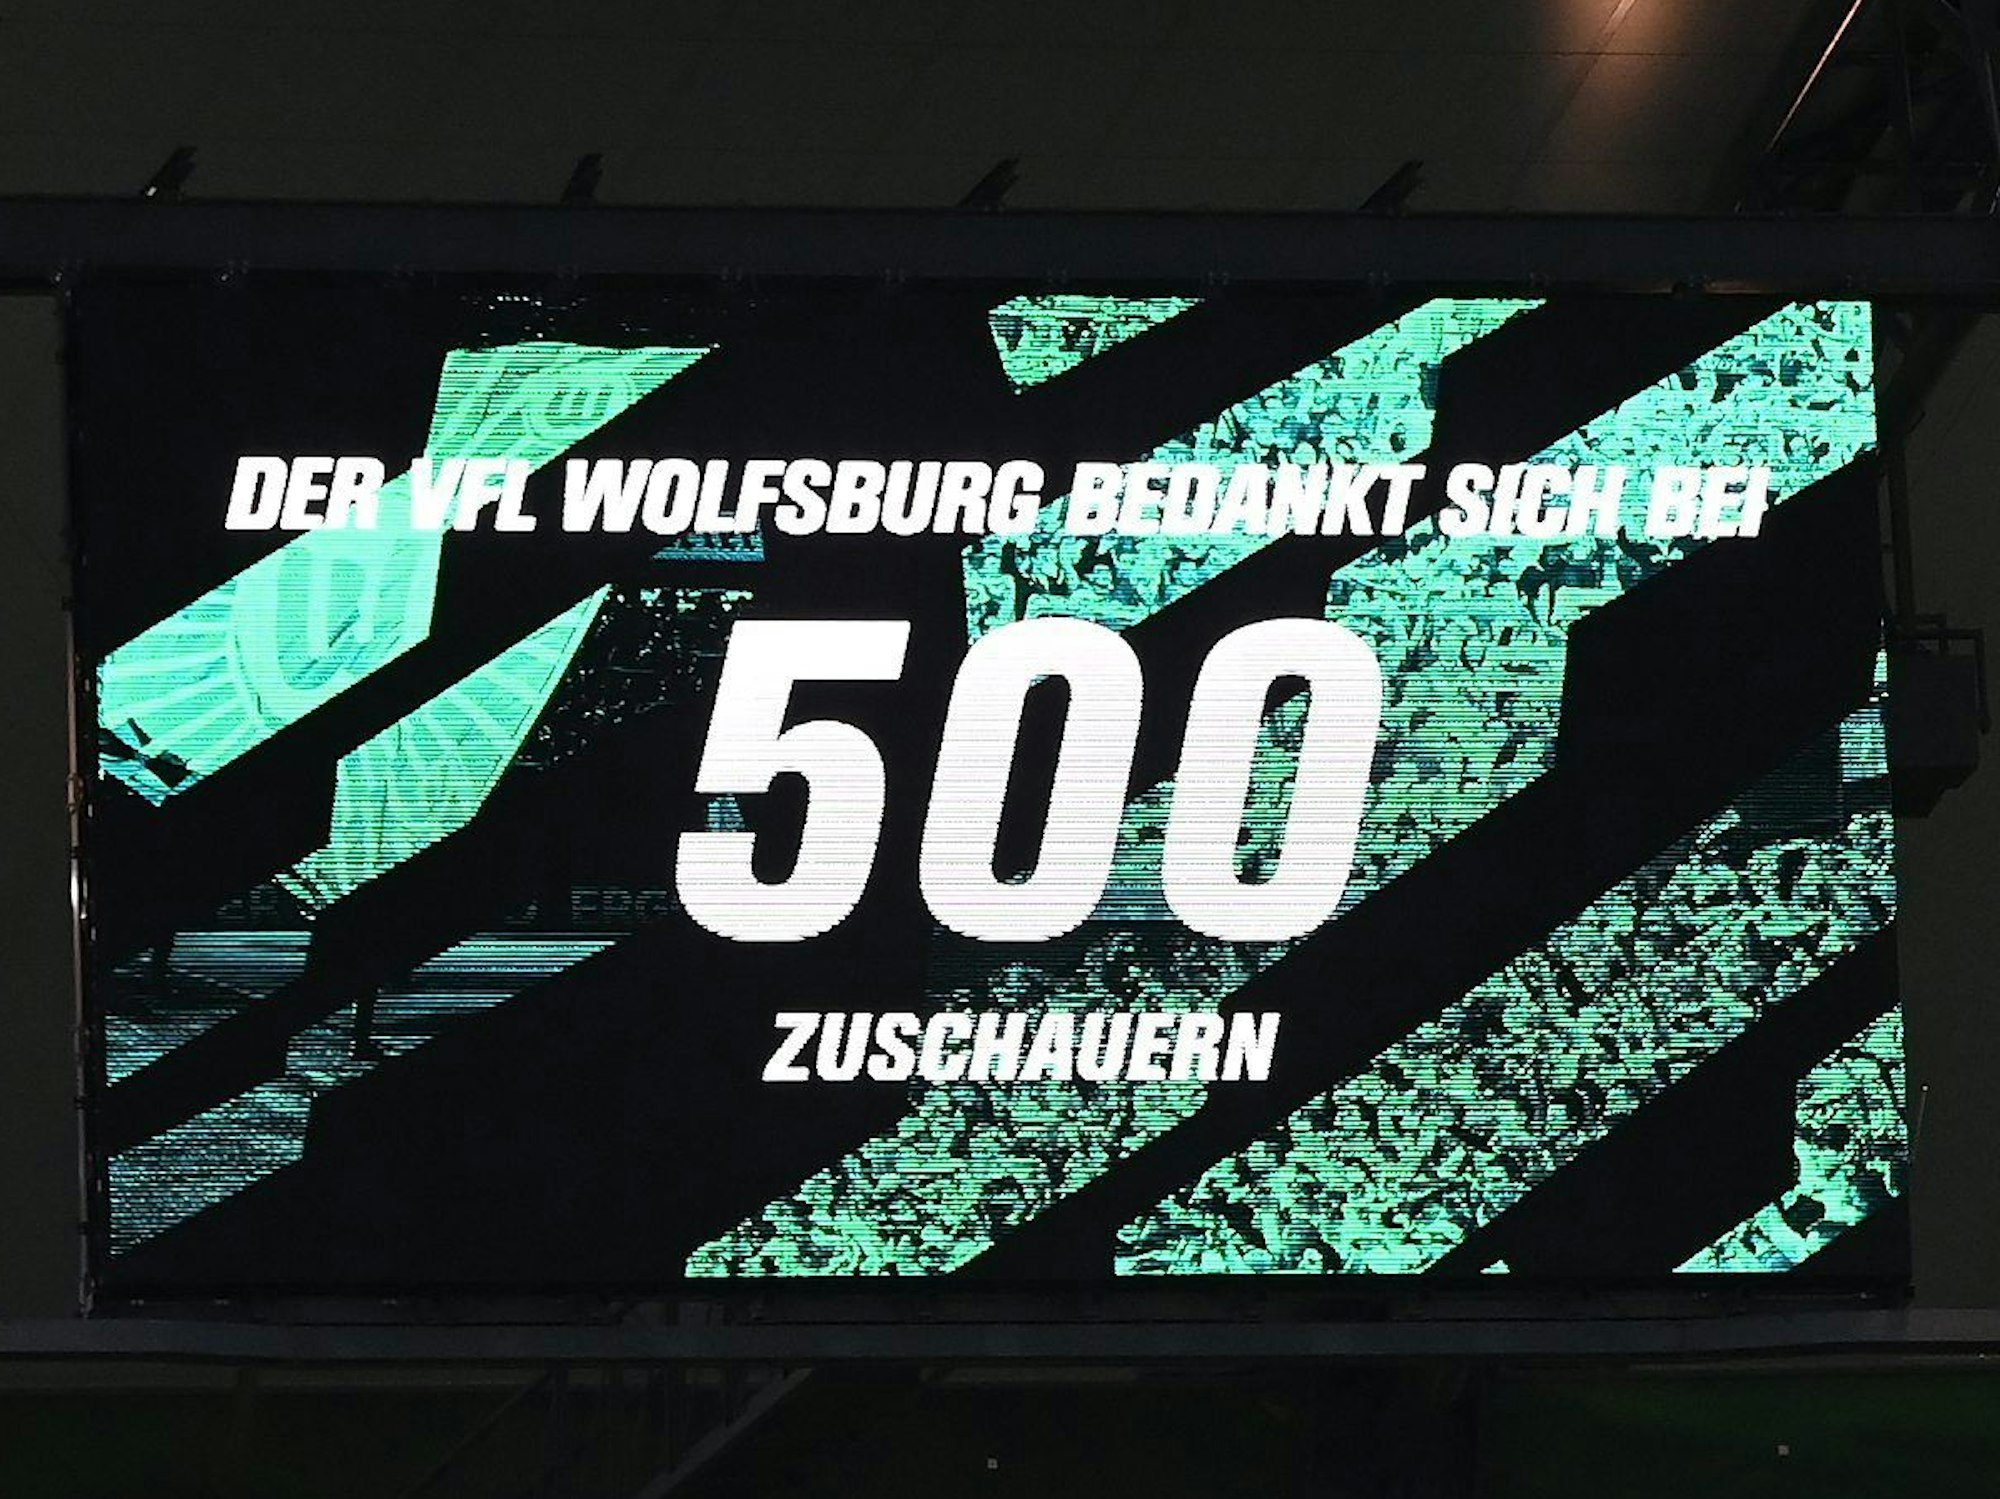 Die Zuschaueranzeige des VfL Wolfsburg zählt gegen Hertha BSC 500 Fans.